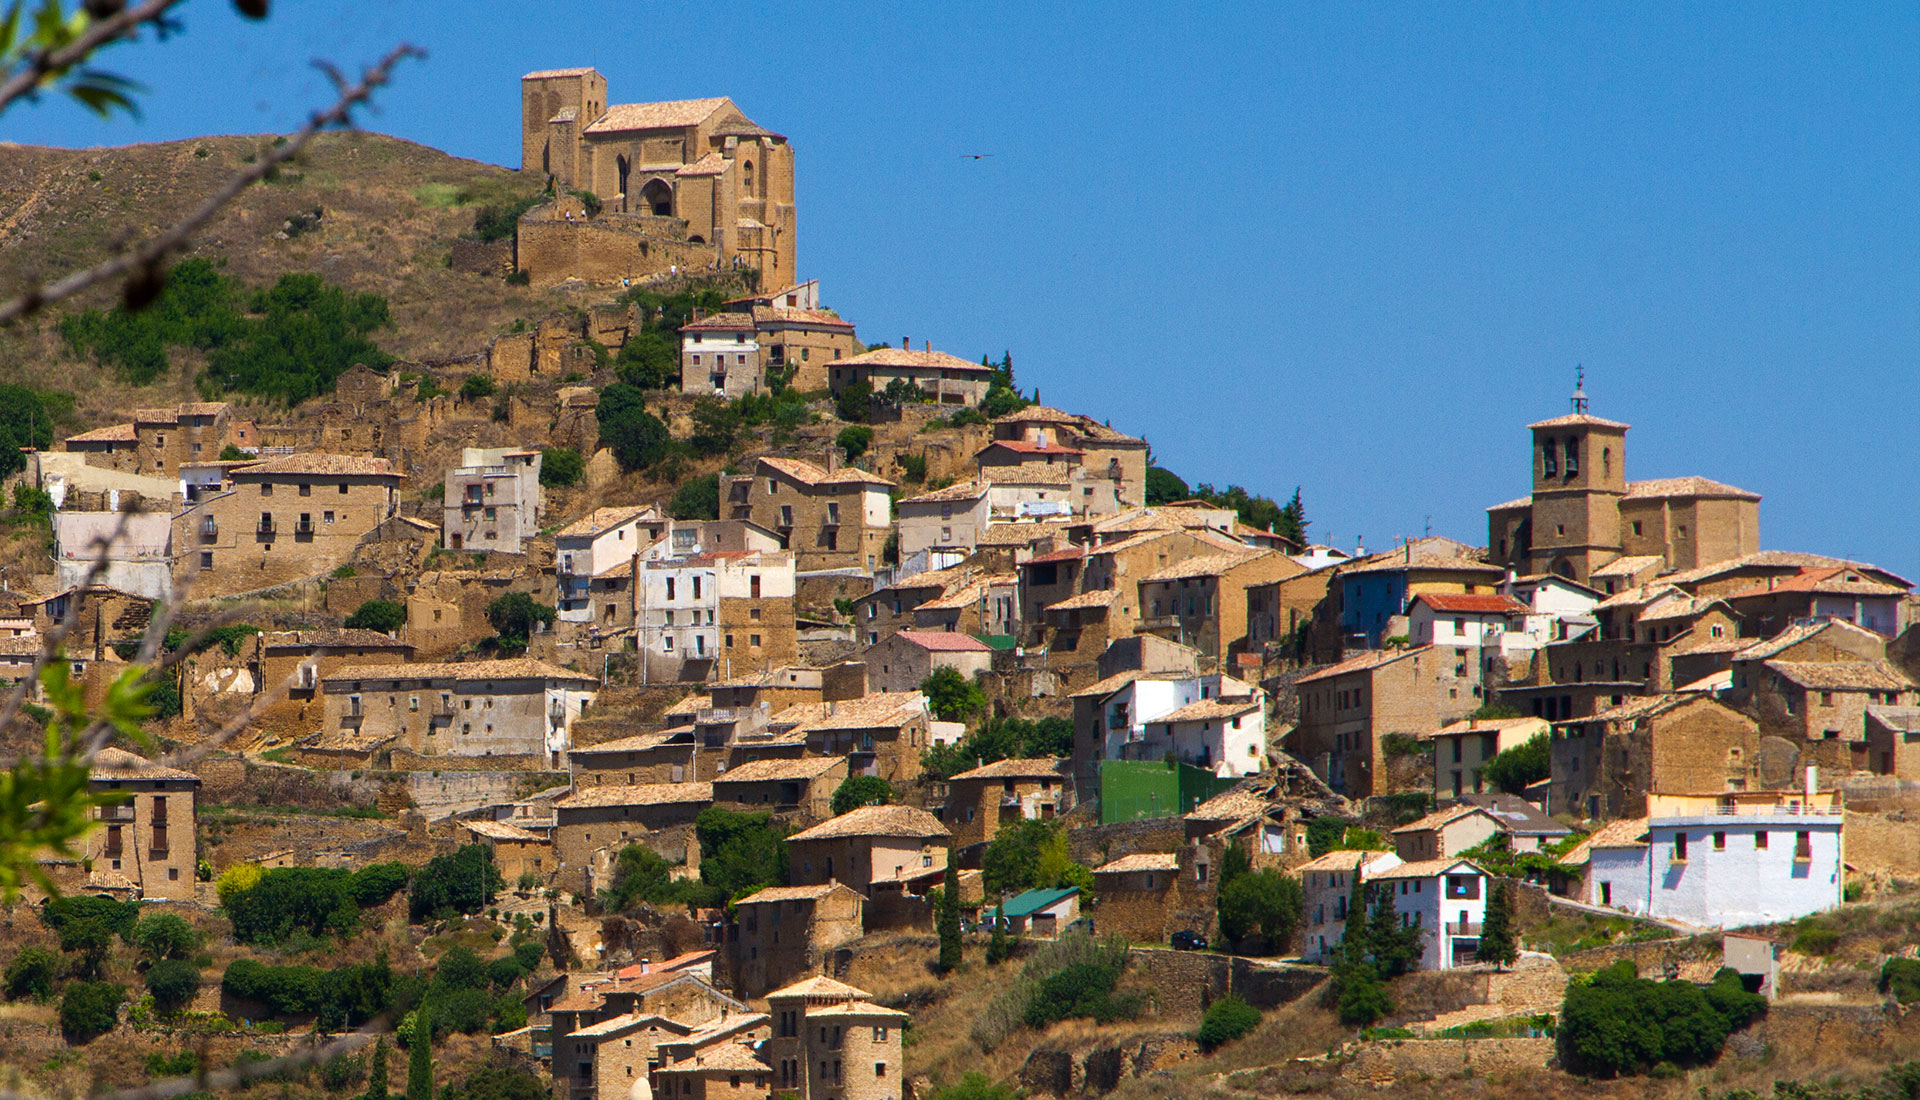 Alojamientos rurales en España navarra contamos con varias casas rurales